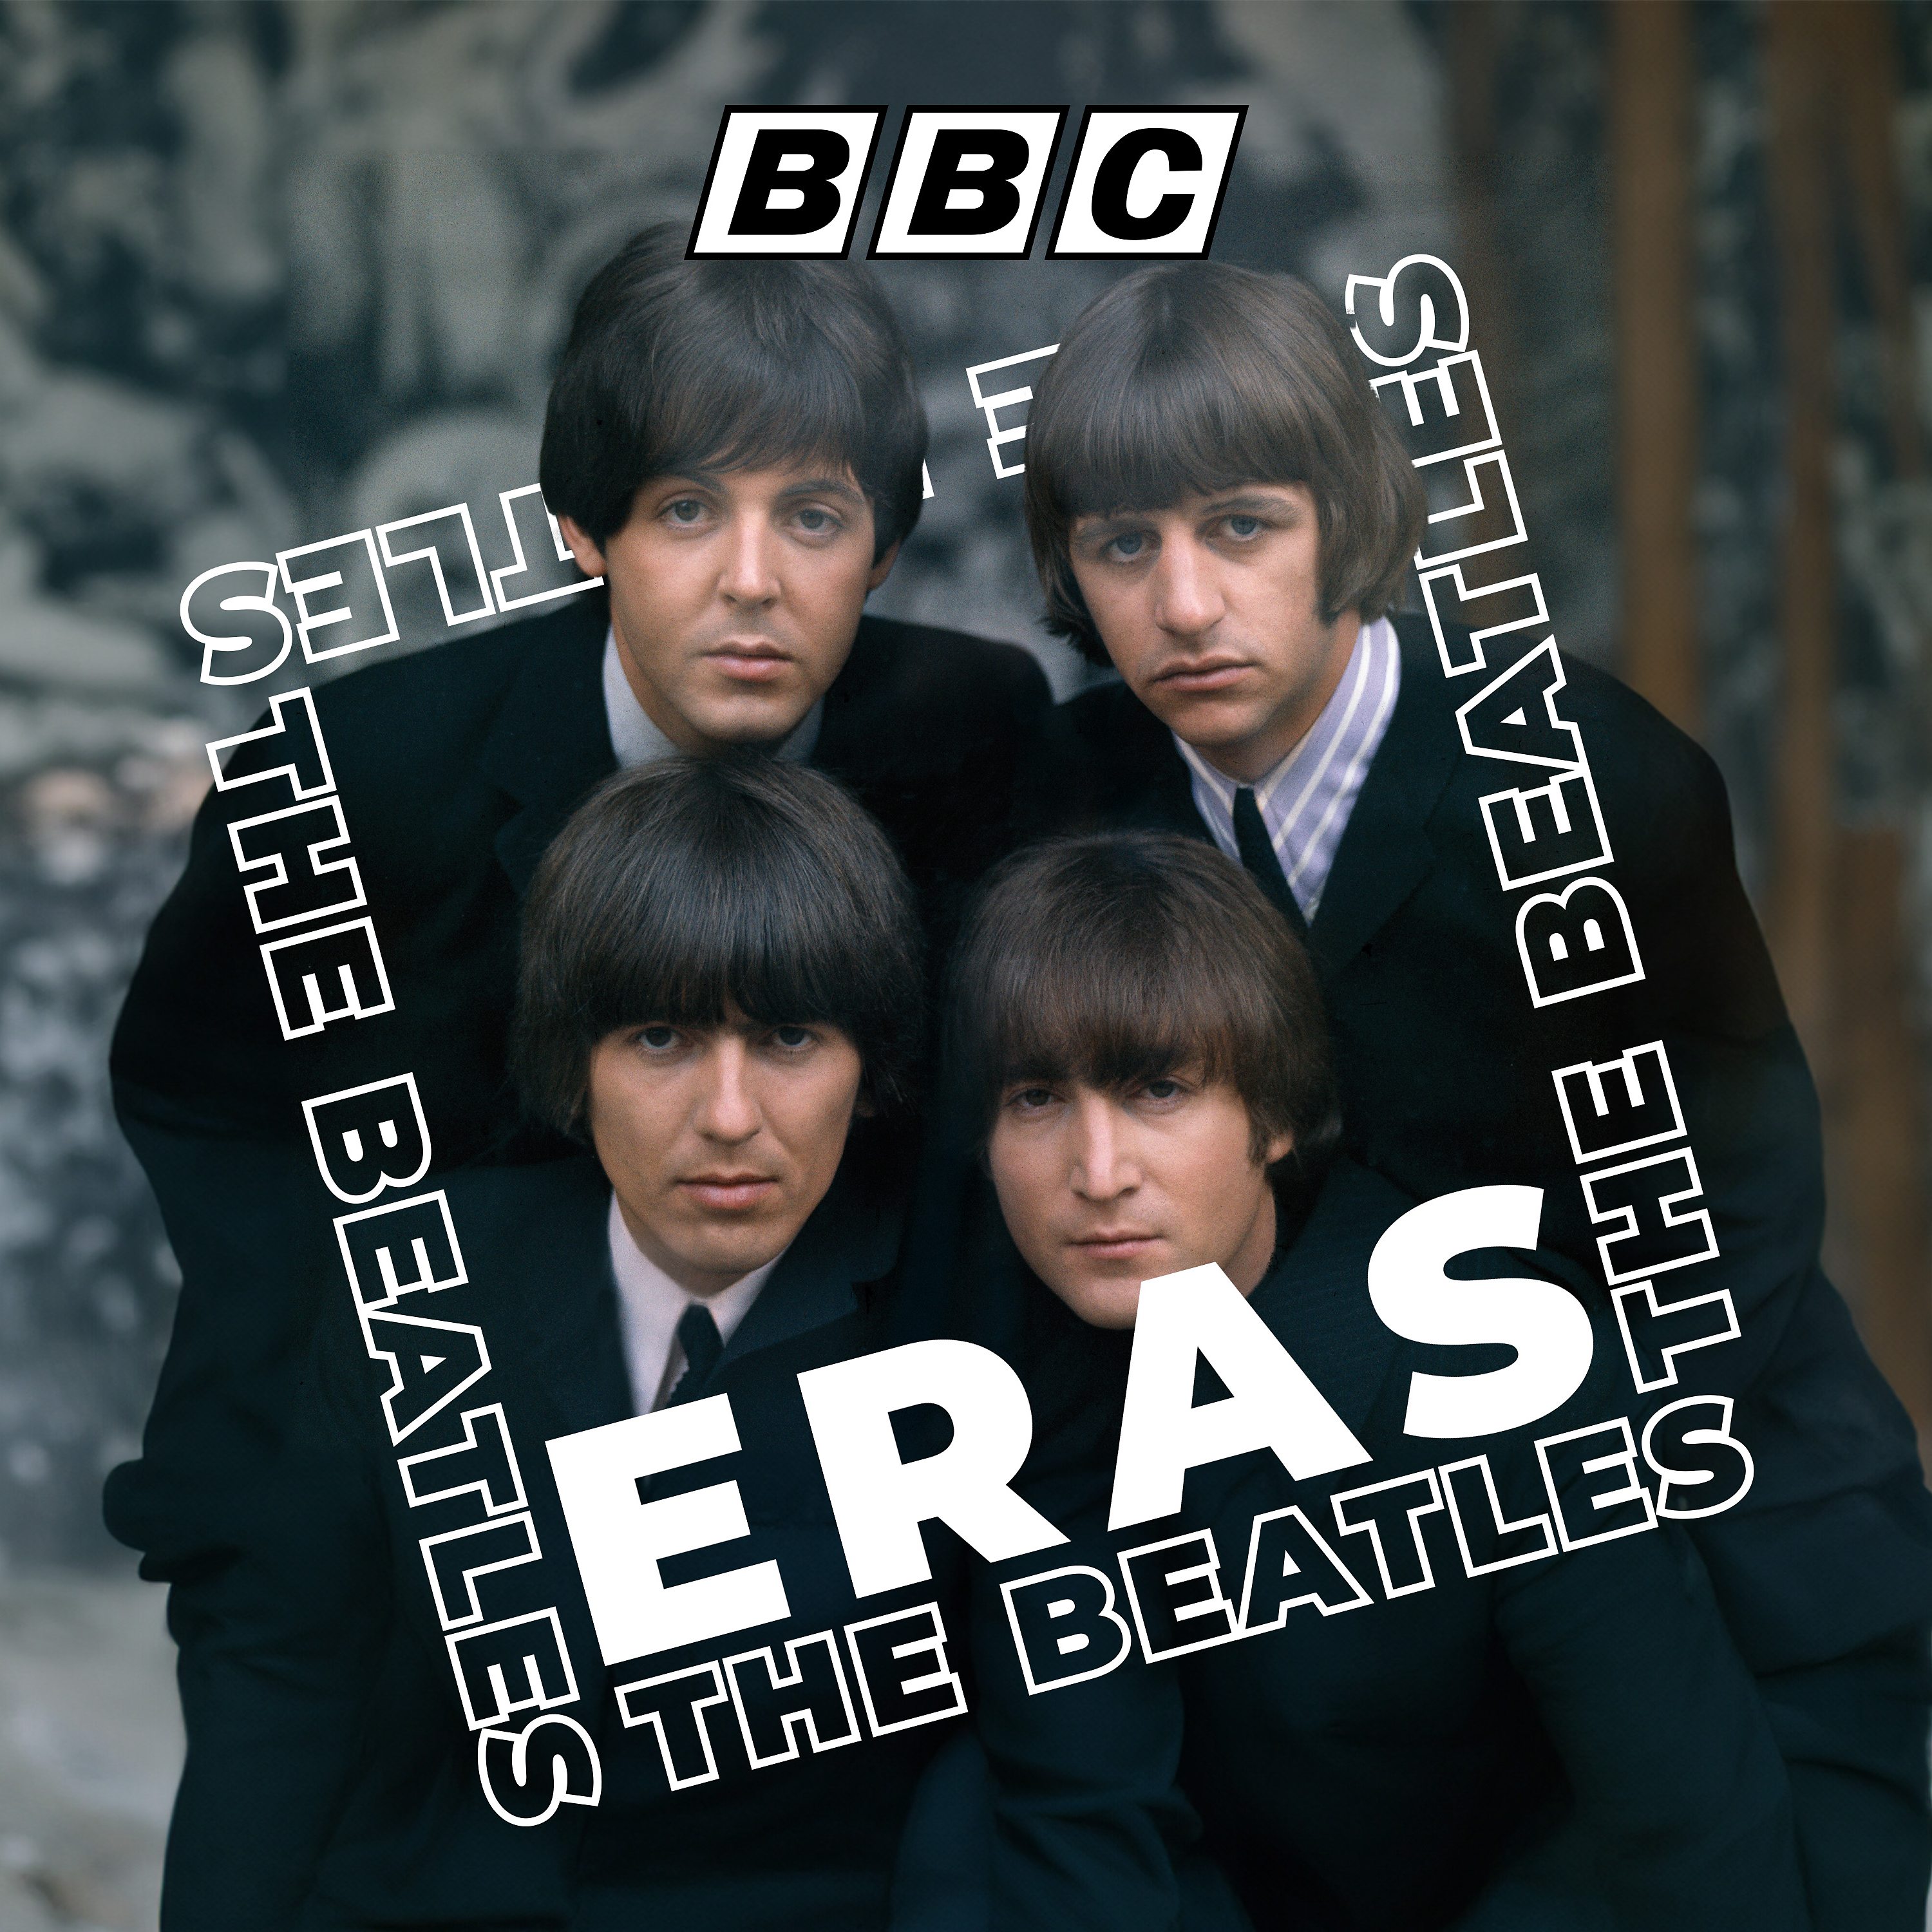 The Beatles: 2. Riots